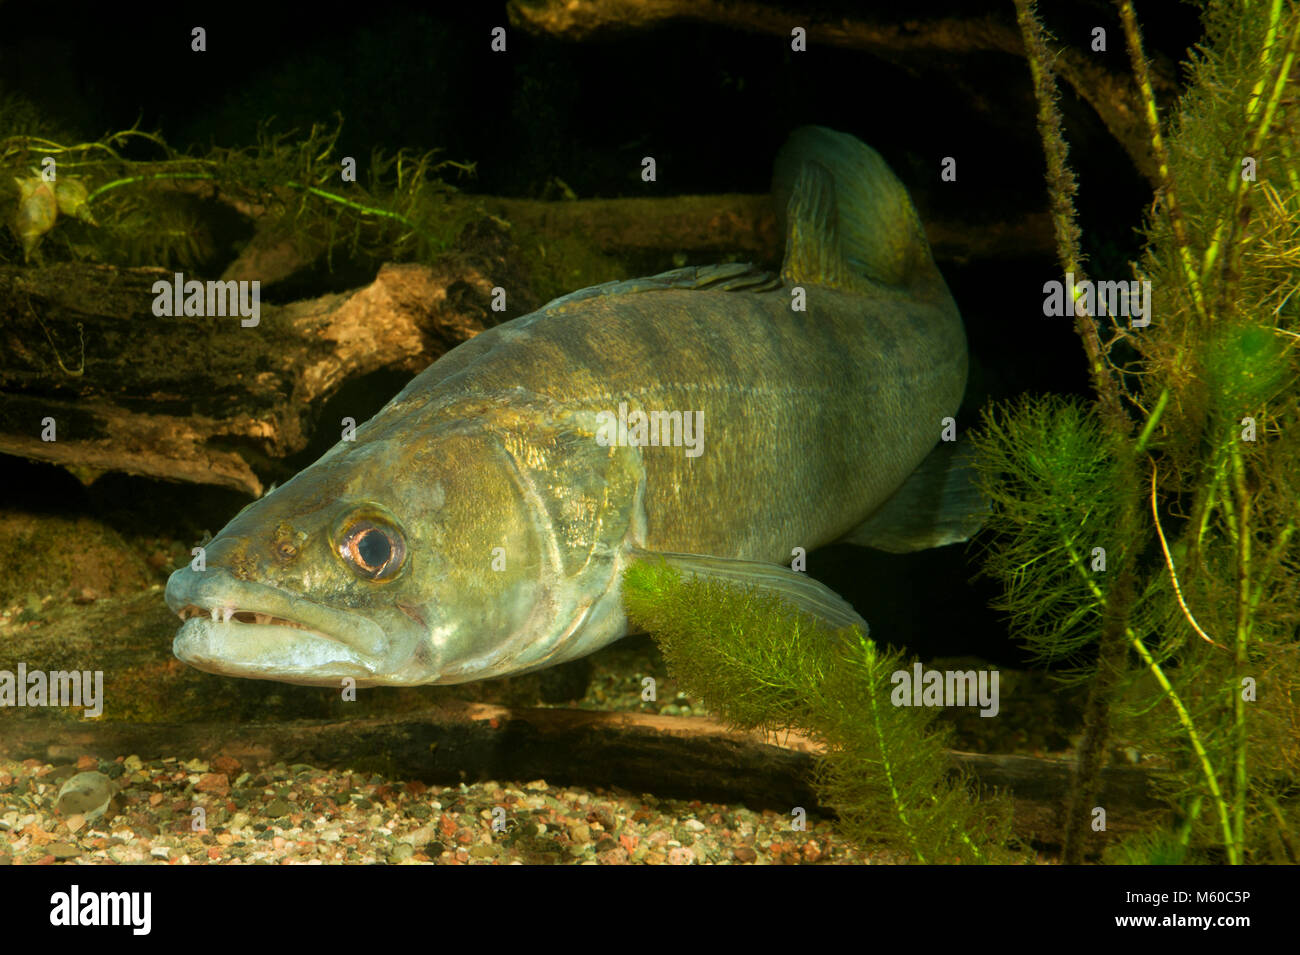 Pike-perch, Zander (Stizostedion lucioperca, Sander lucioperca) under water. Germany Stock Photo